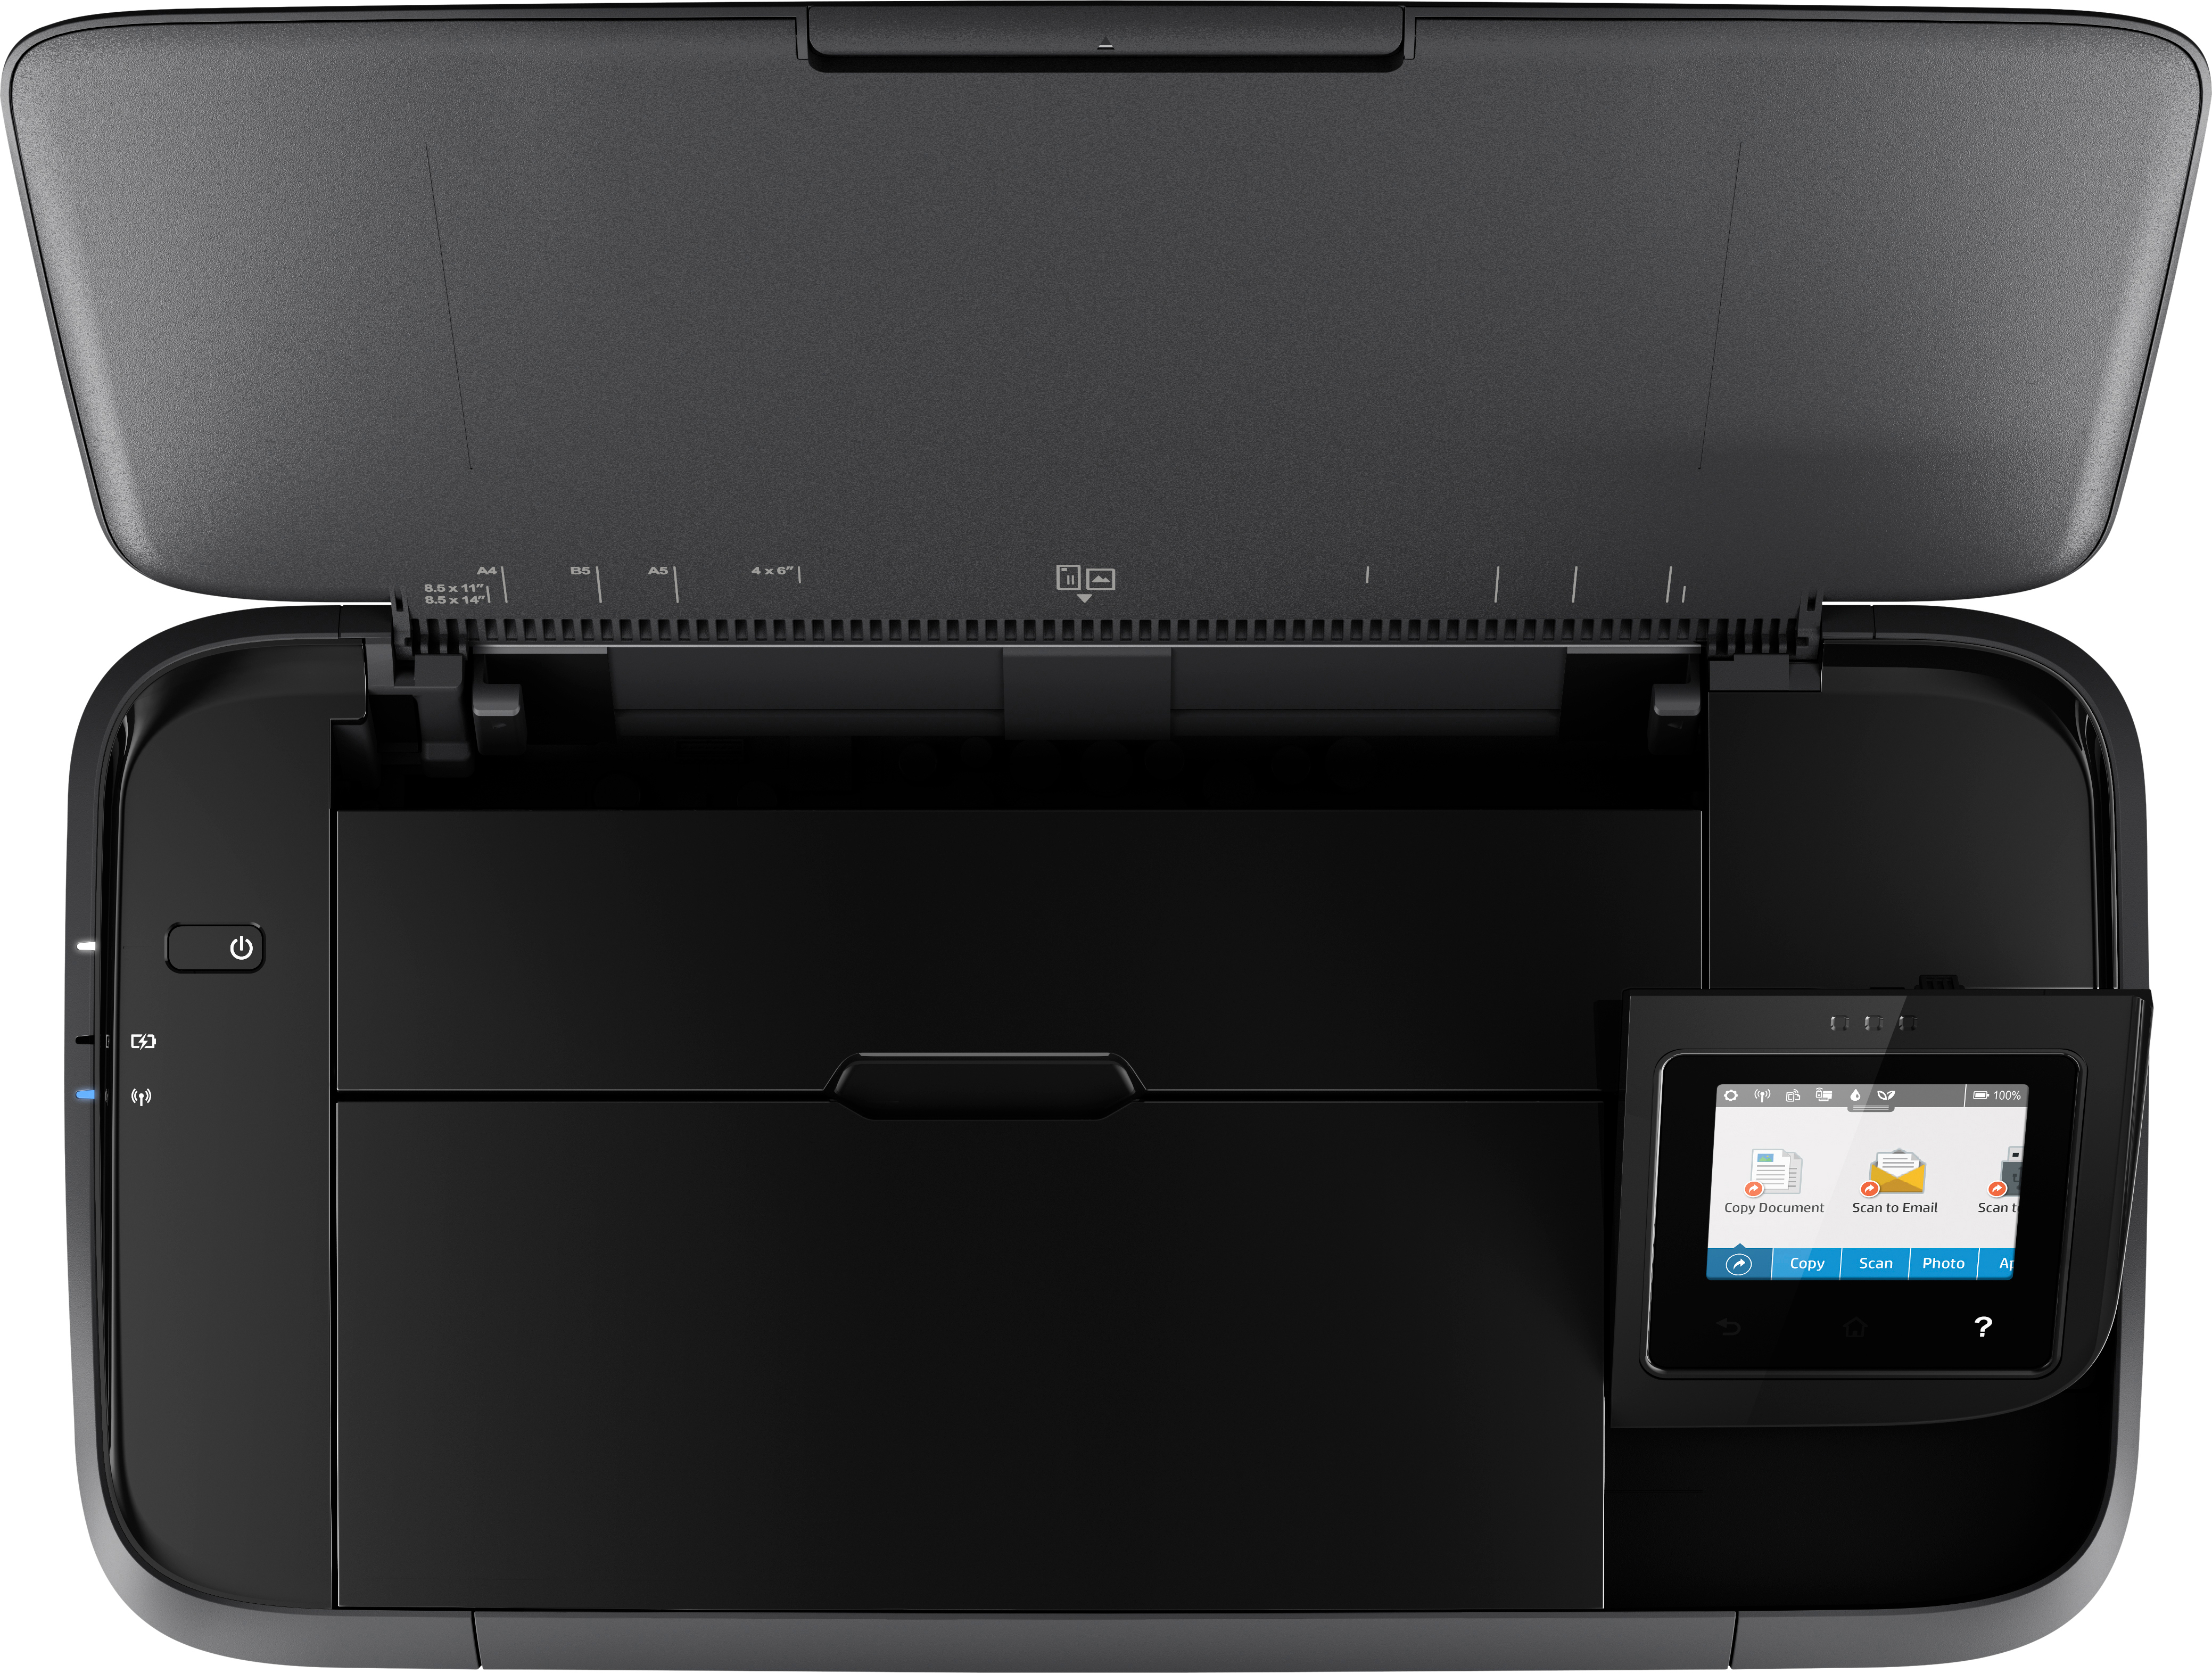 HP OfficeJet 250 WLAN 3-in-1 Multifunktionsdrucker Tintenstrahldruck Mobil